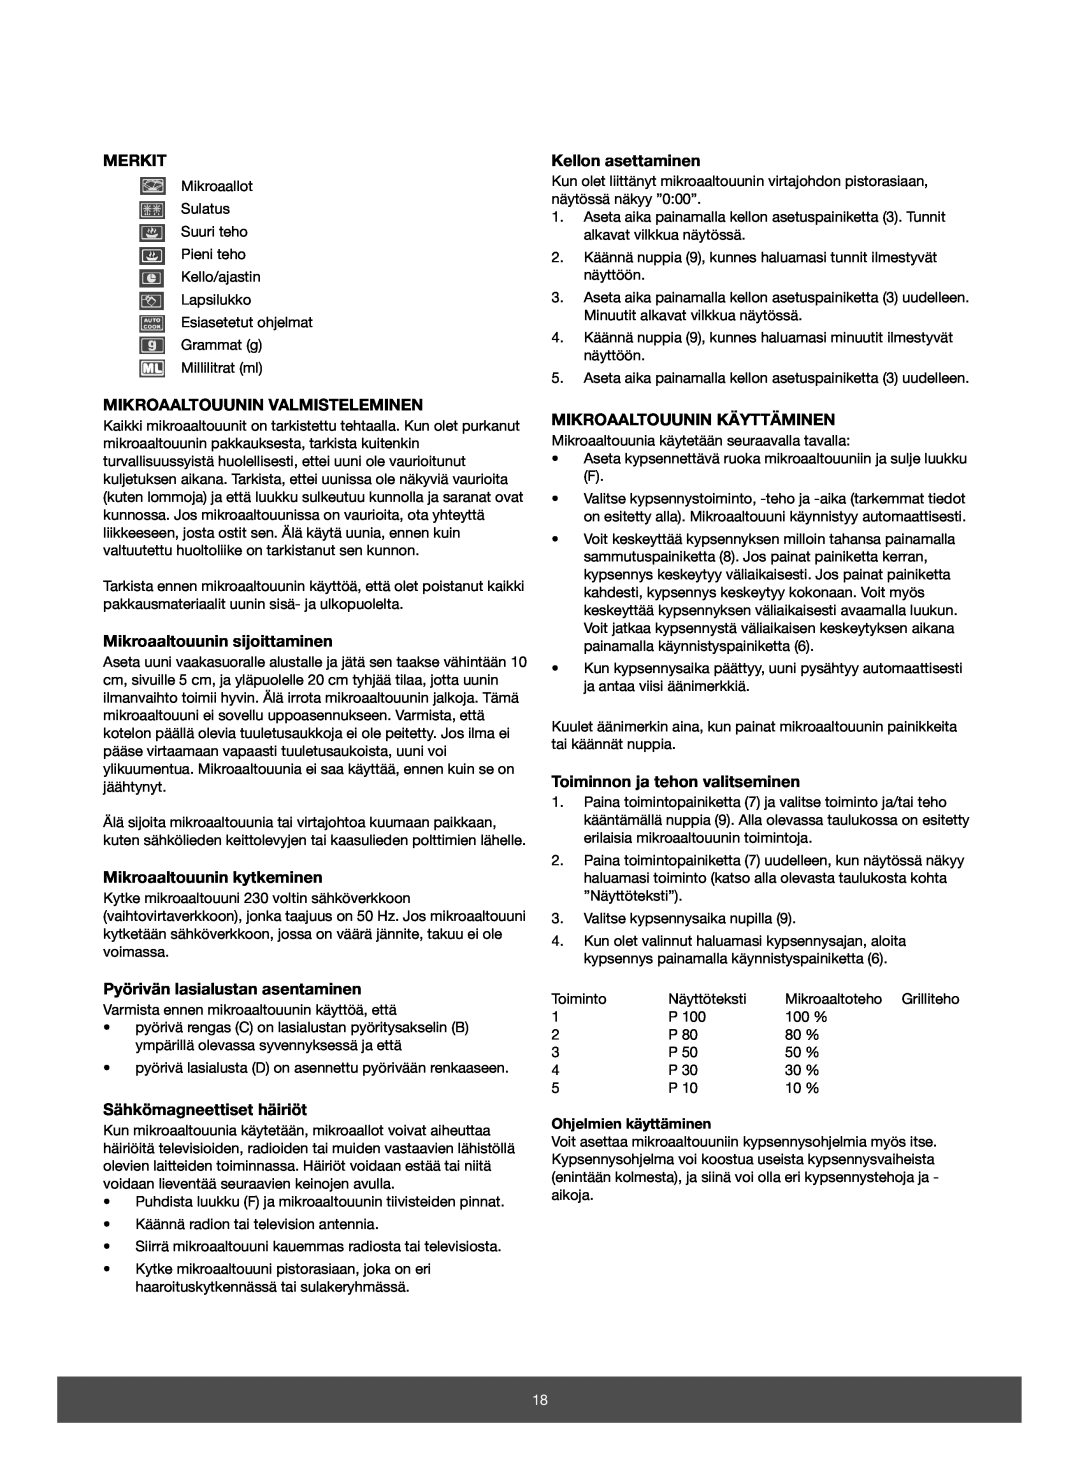 Melissa 653-082 manual Merkit, Mikroaaltouunin Valmisteleminen, Mikroaaltouunin sijoittaminen, Mikroaaltouunin kytkeminen 